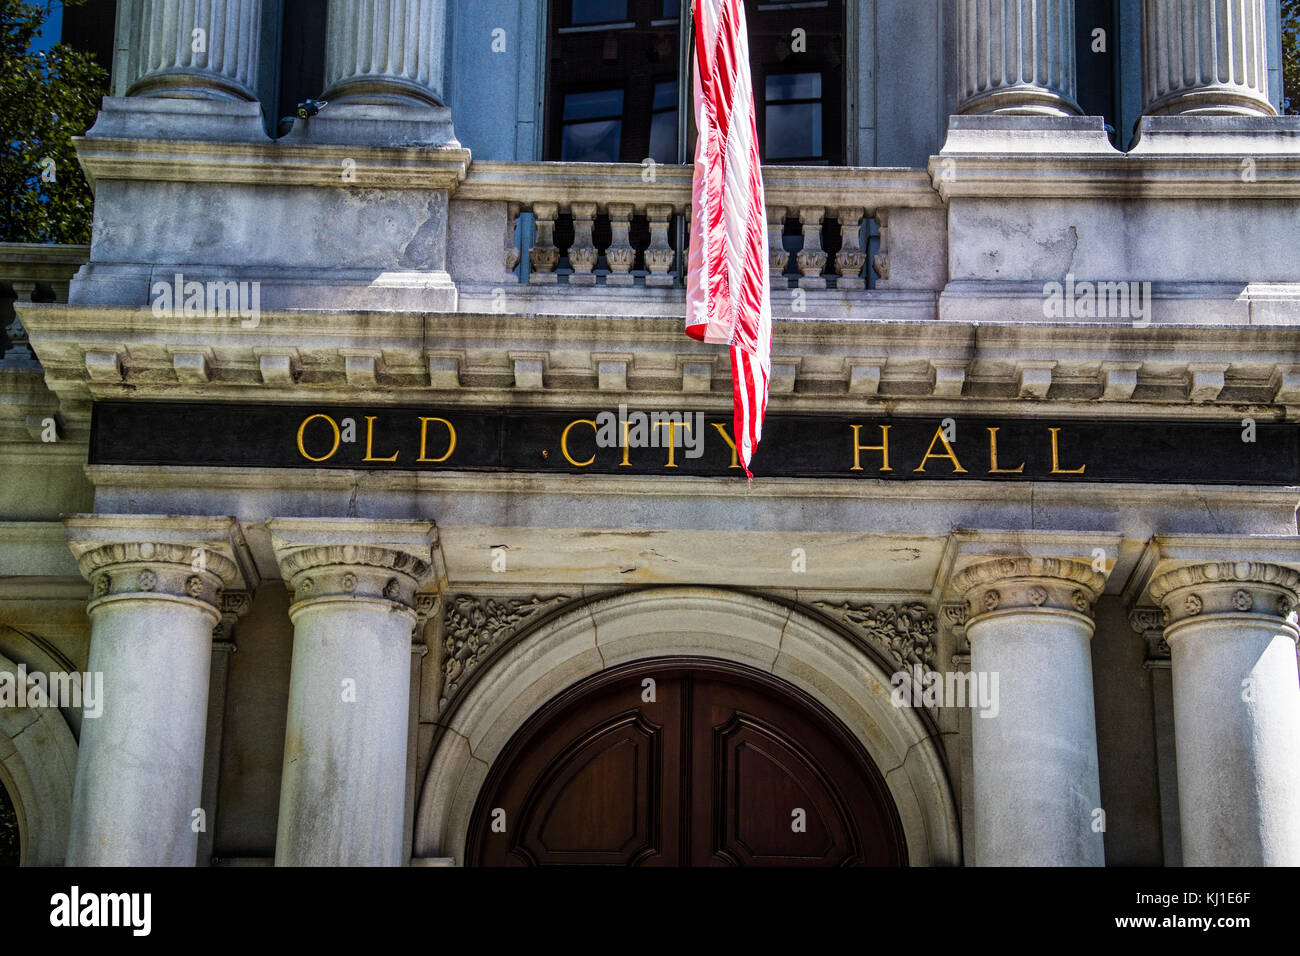 Old City Hall, Boston, Massachusetts, USA Stock Photo